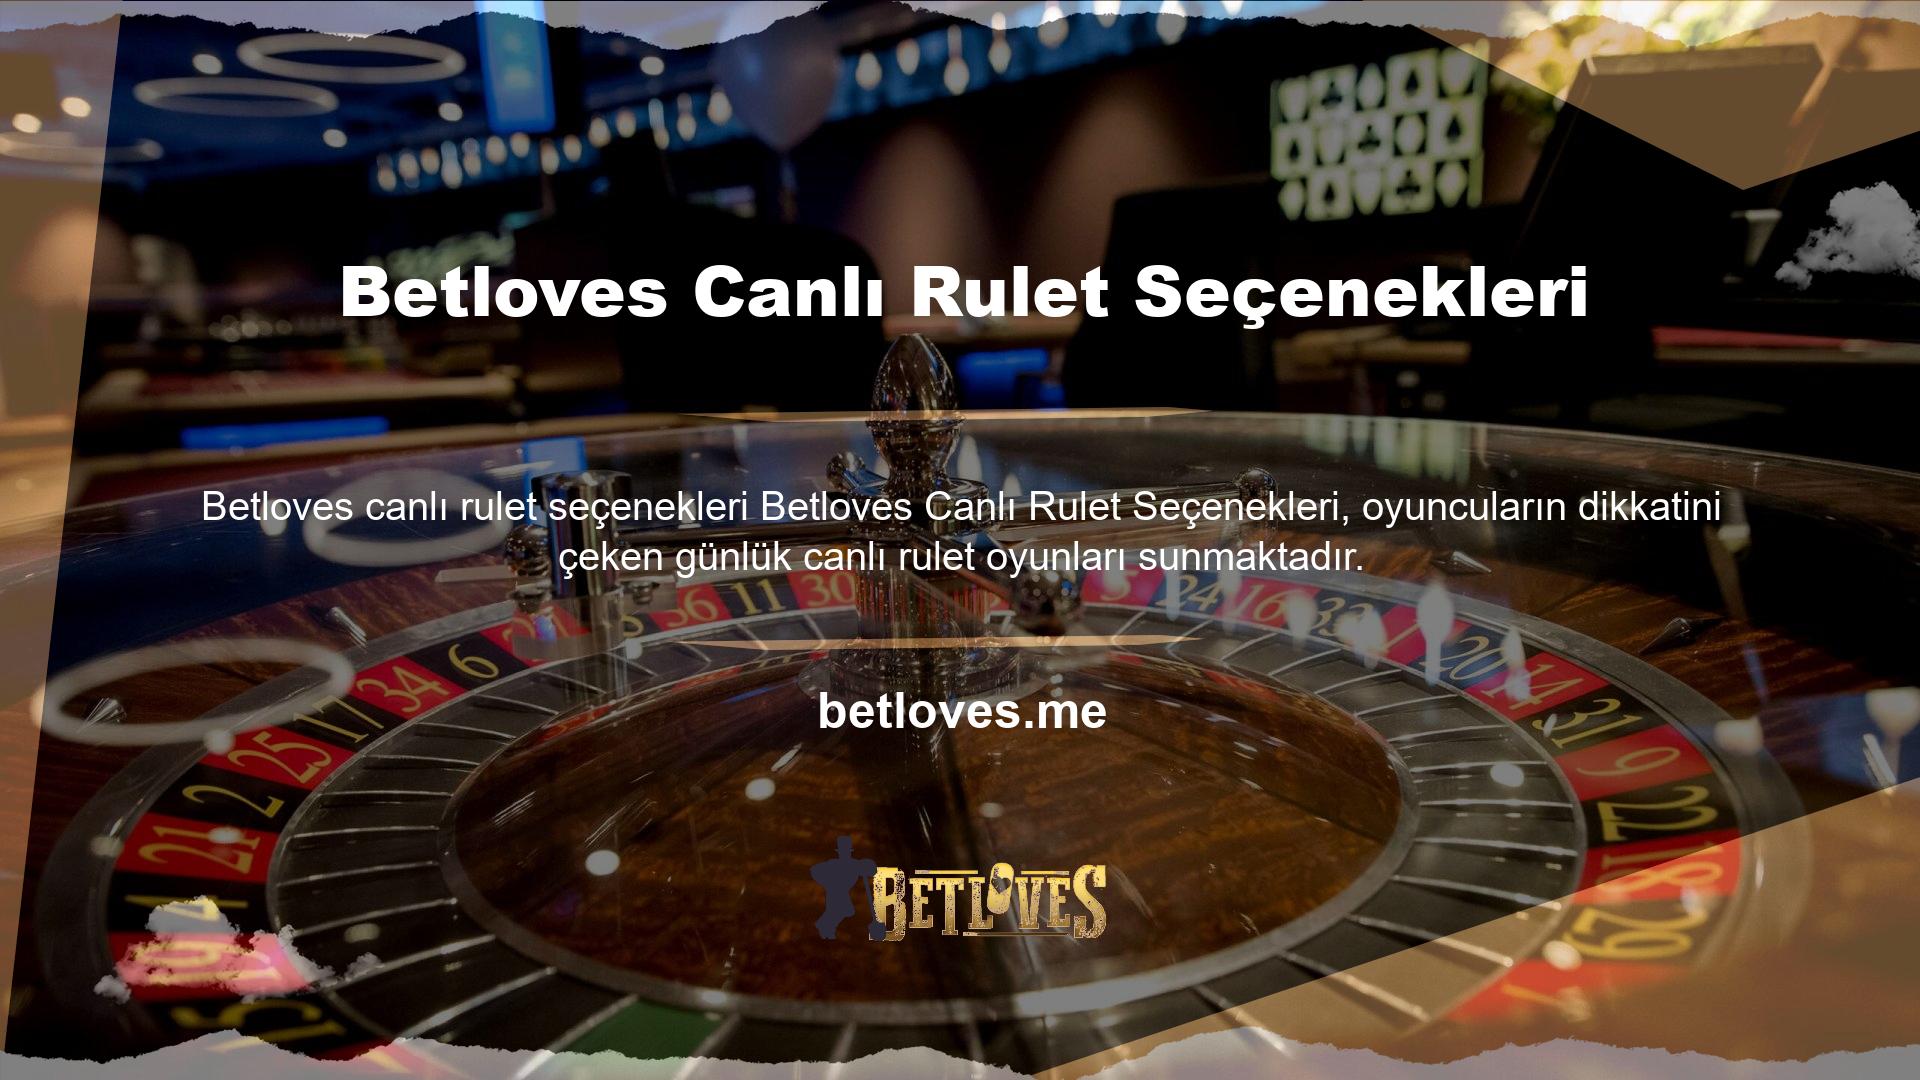 Bahis sitesinin canlı rulet bölümü;

	Eşler Arası Casino
	Amerikan Ruleti
	Rulet Seçeneklerini destekler